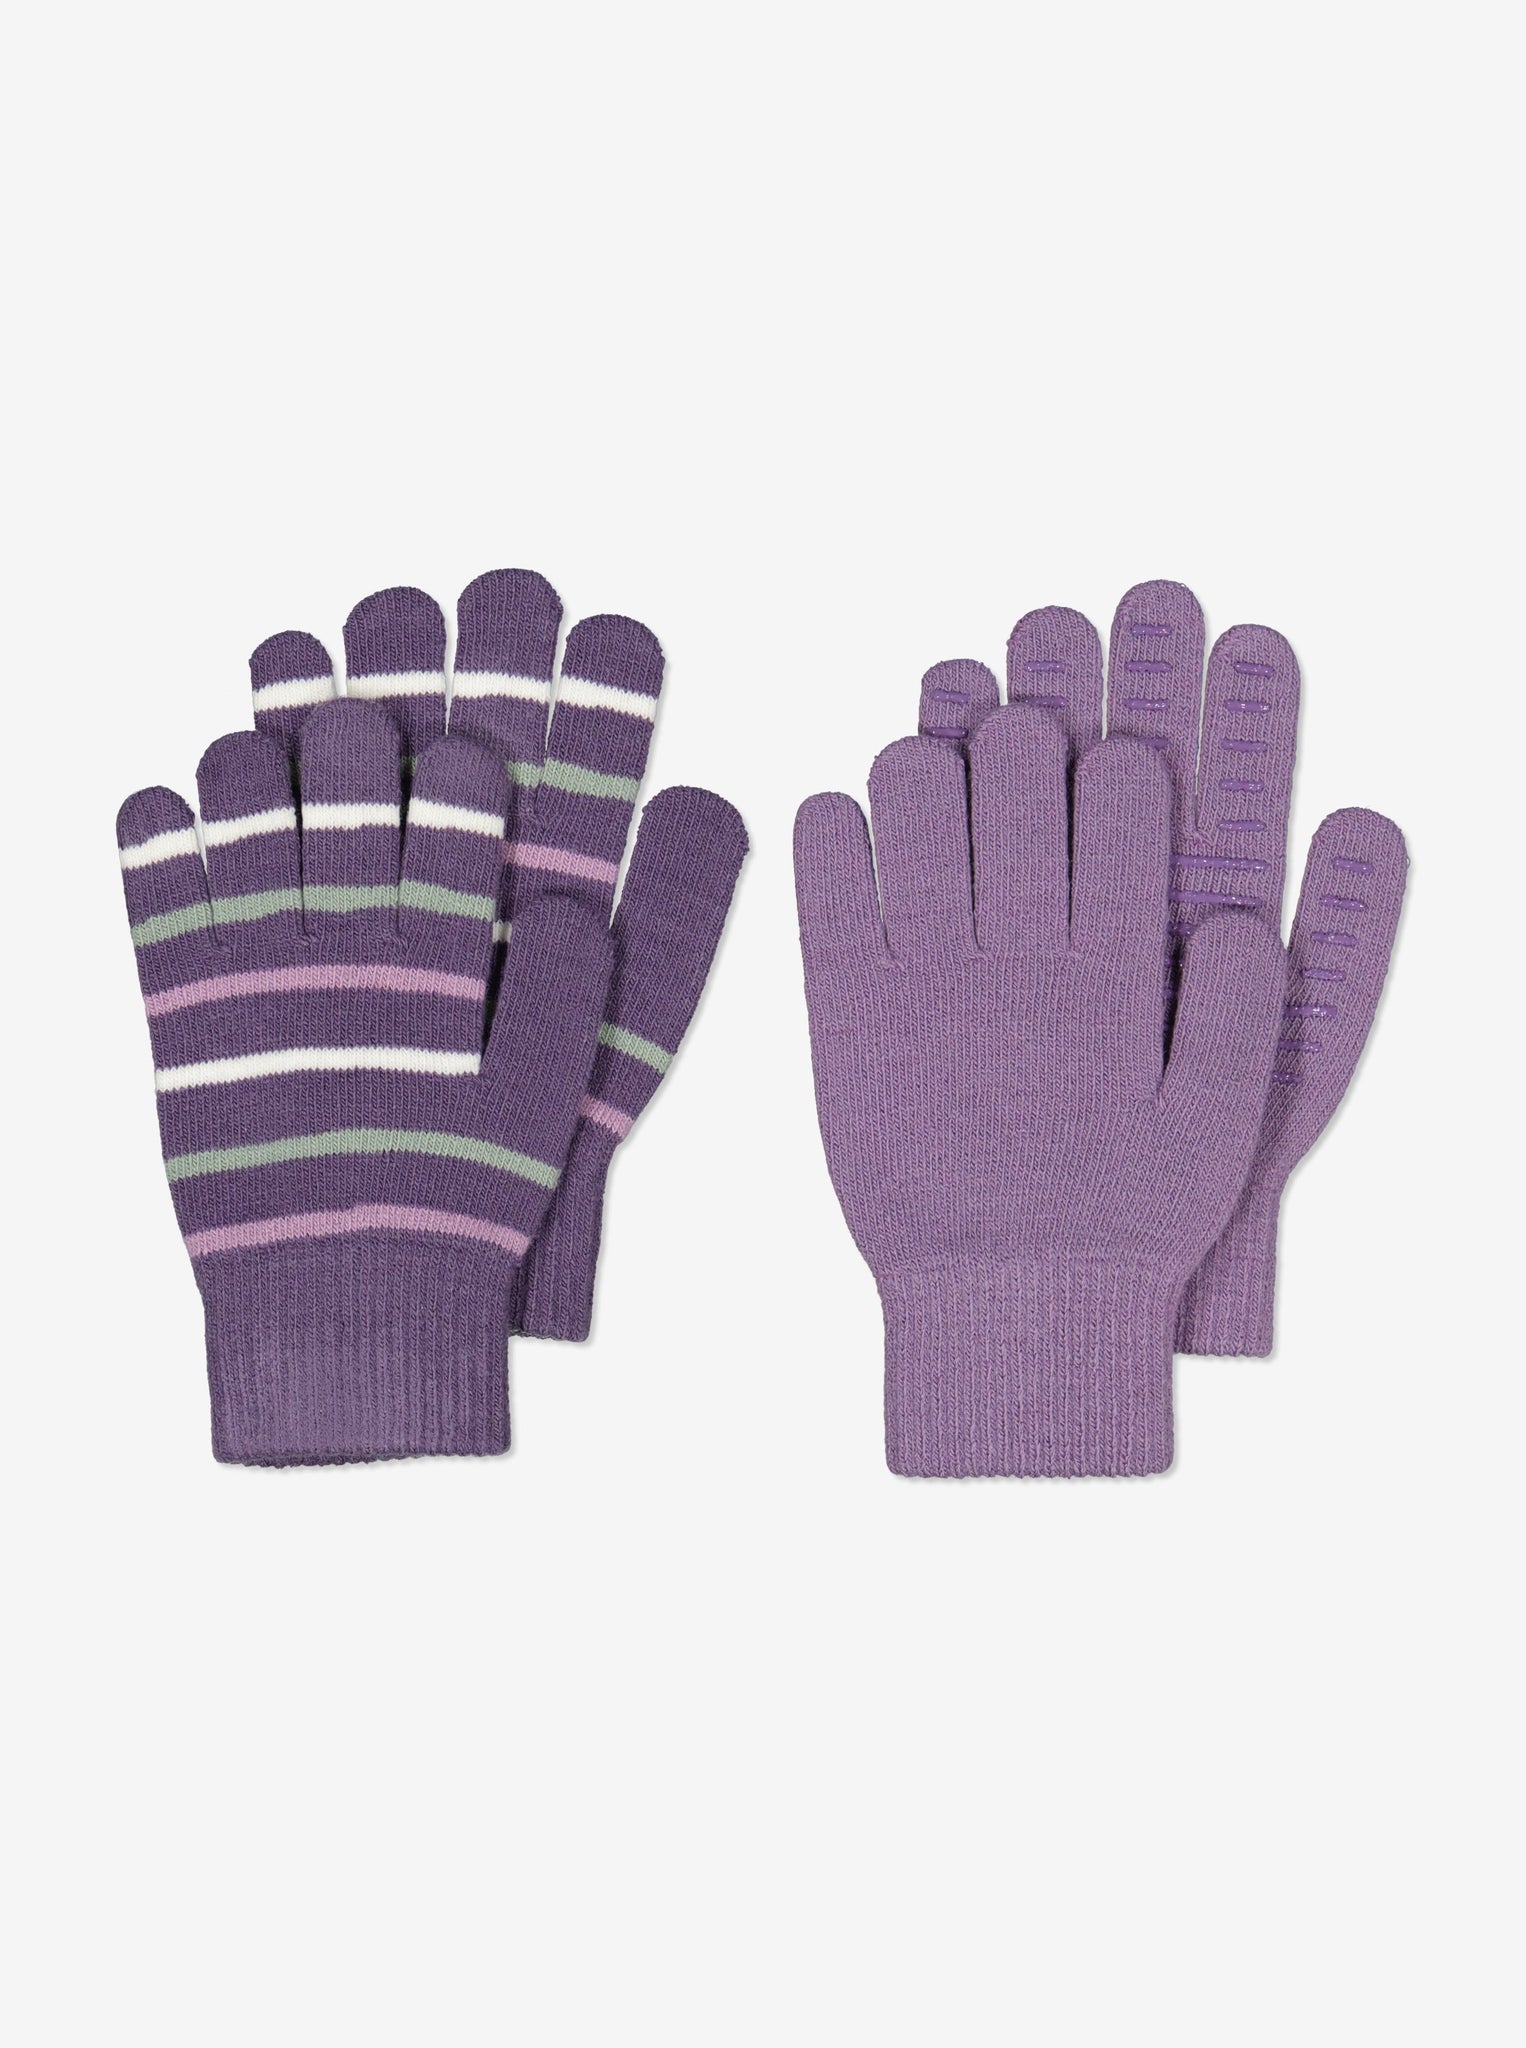 Purple Kids Magic Gloves from Polarn O. Pyret Kidswear. 